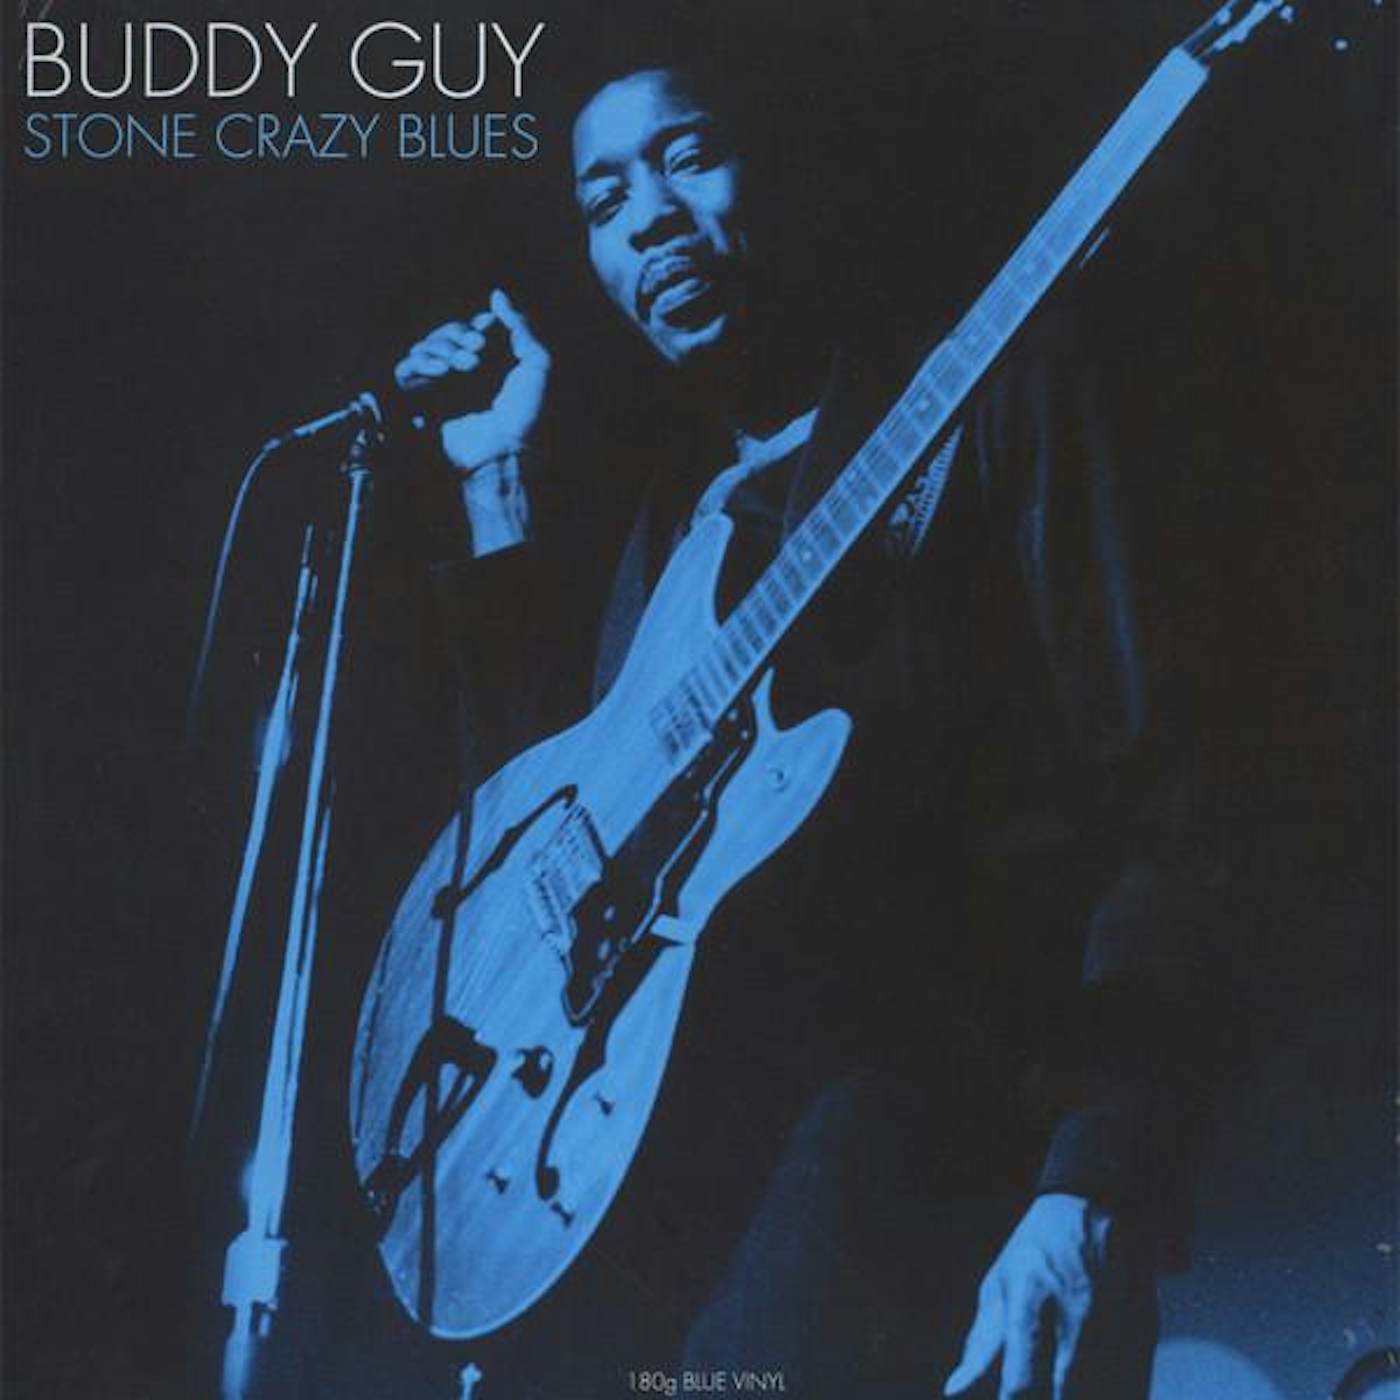 Buddy Guy STONE CRAZY BLUES (180G BLUE VINYL) Vinyl Record